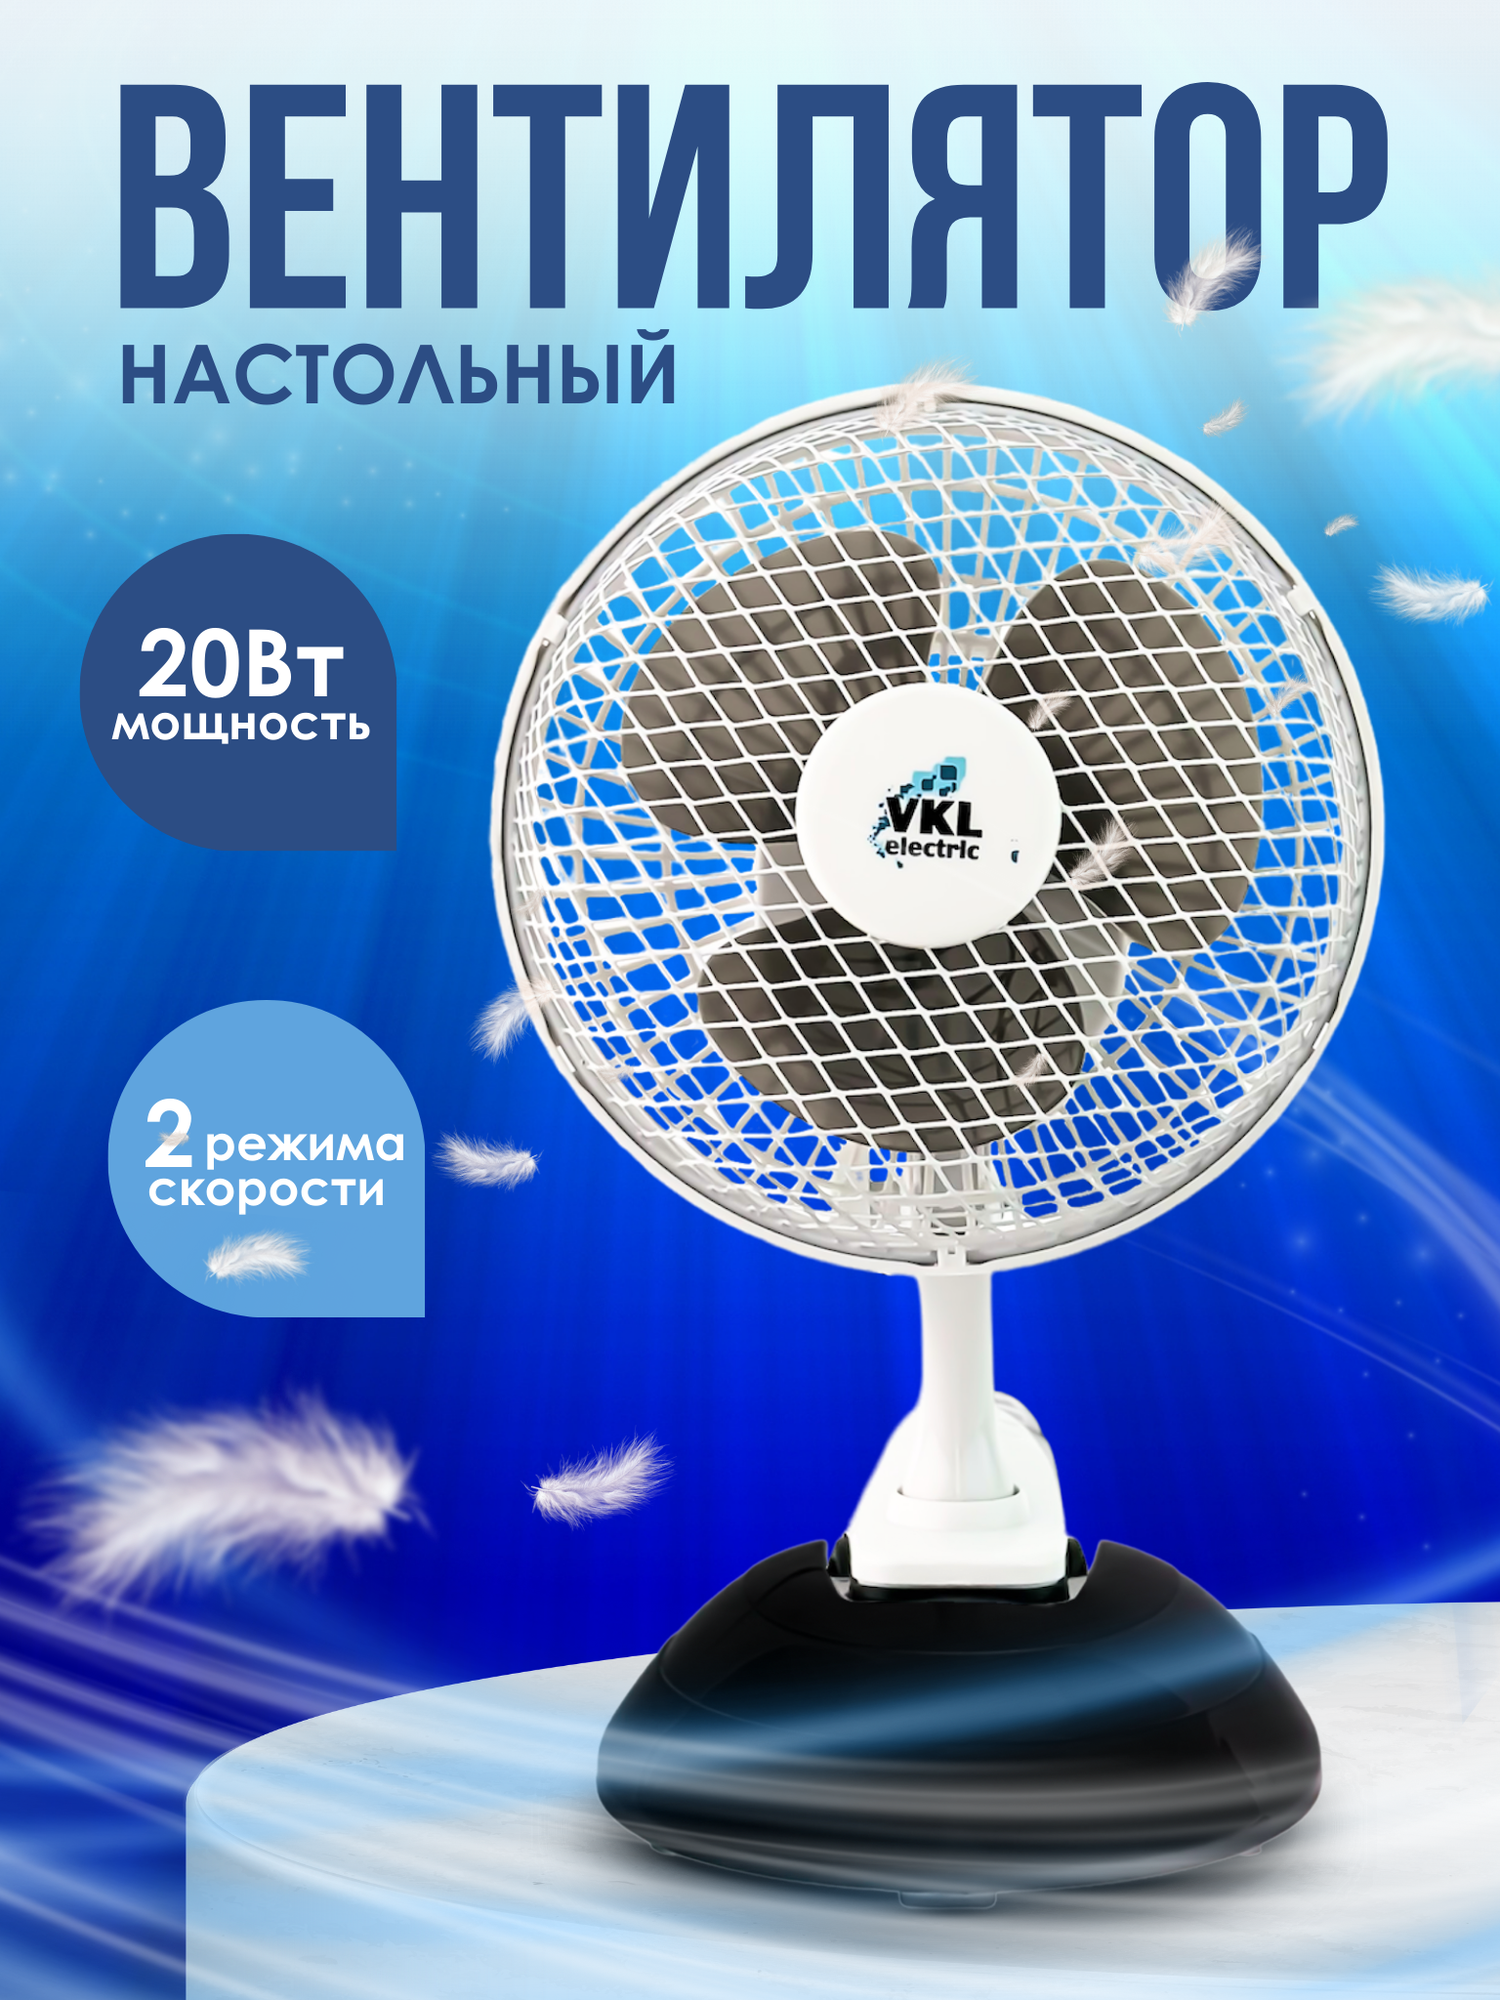 Вентилятор настольный на прищепке VKL Electric VTF-03, 20Вт, 2 скорости, 220В, черный